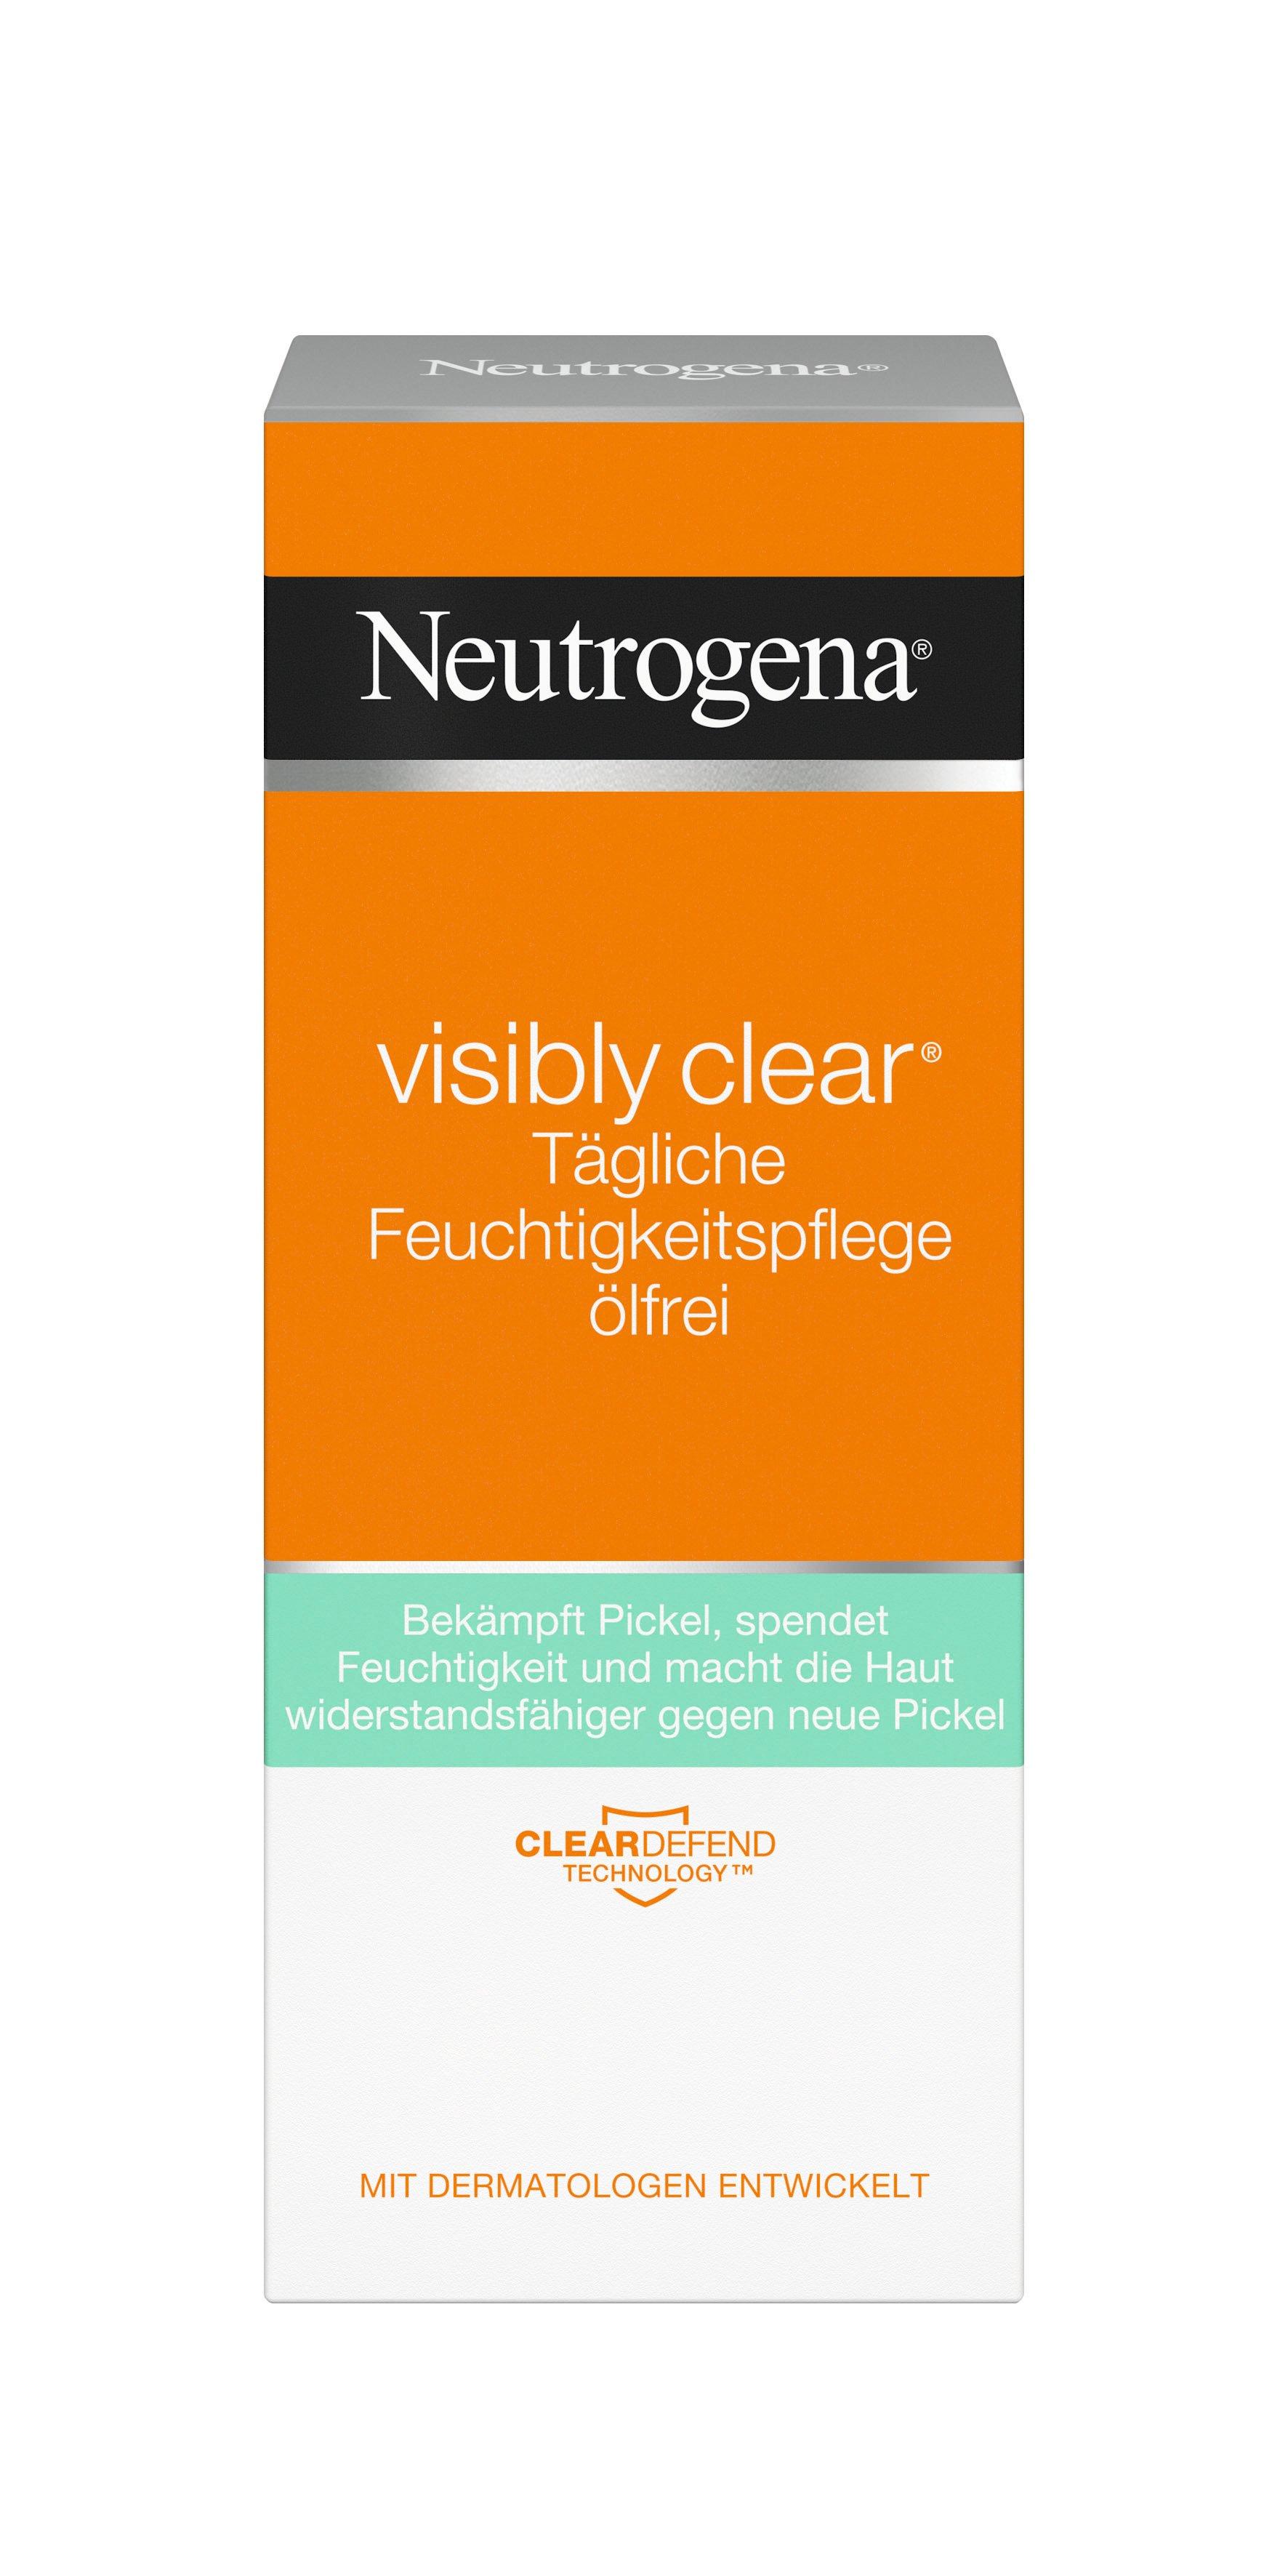 Neutrogena Visbly Clear Visibly Clear Tägliche Feuchtigkeitspflege ölfrei 